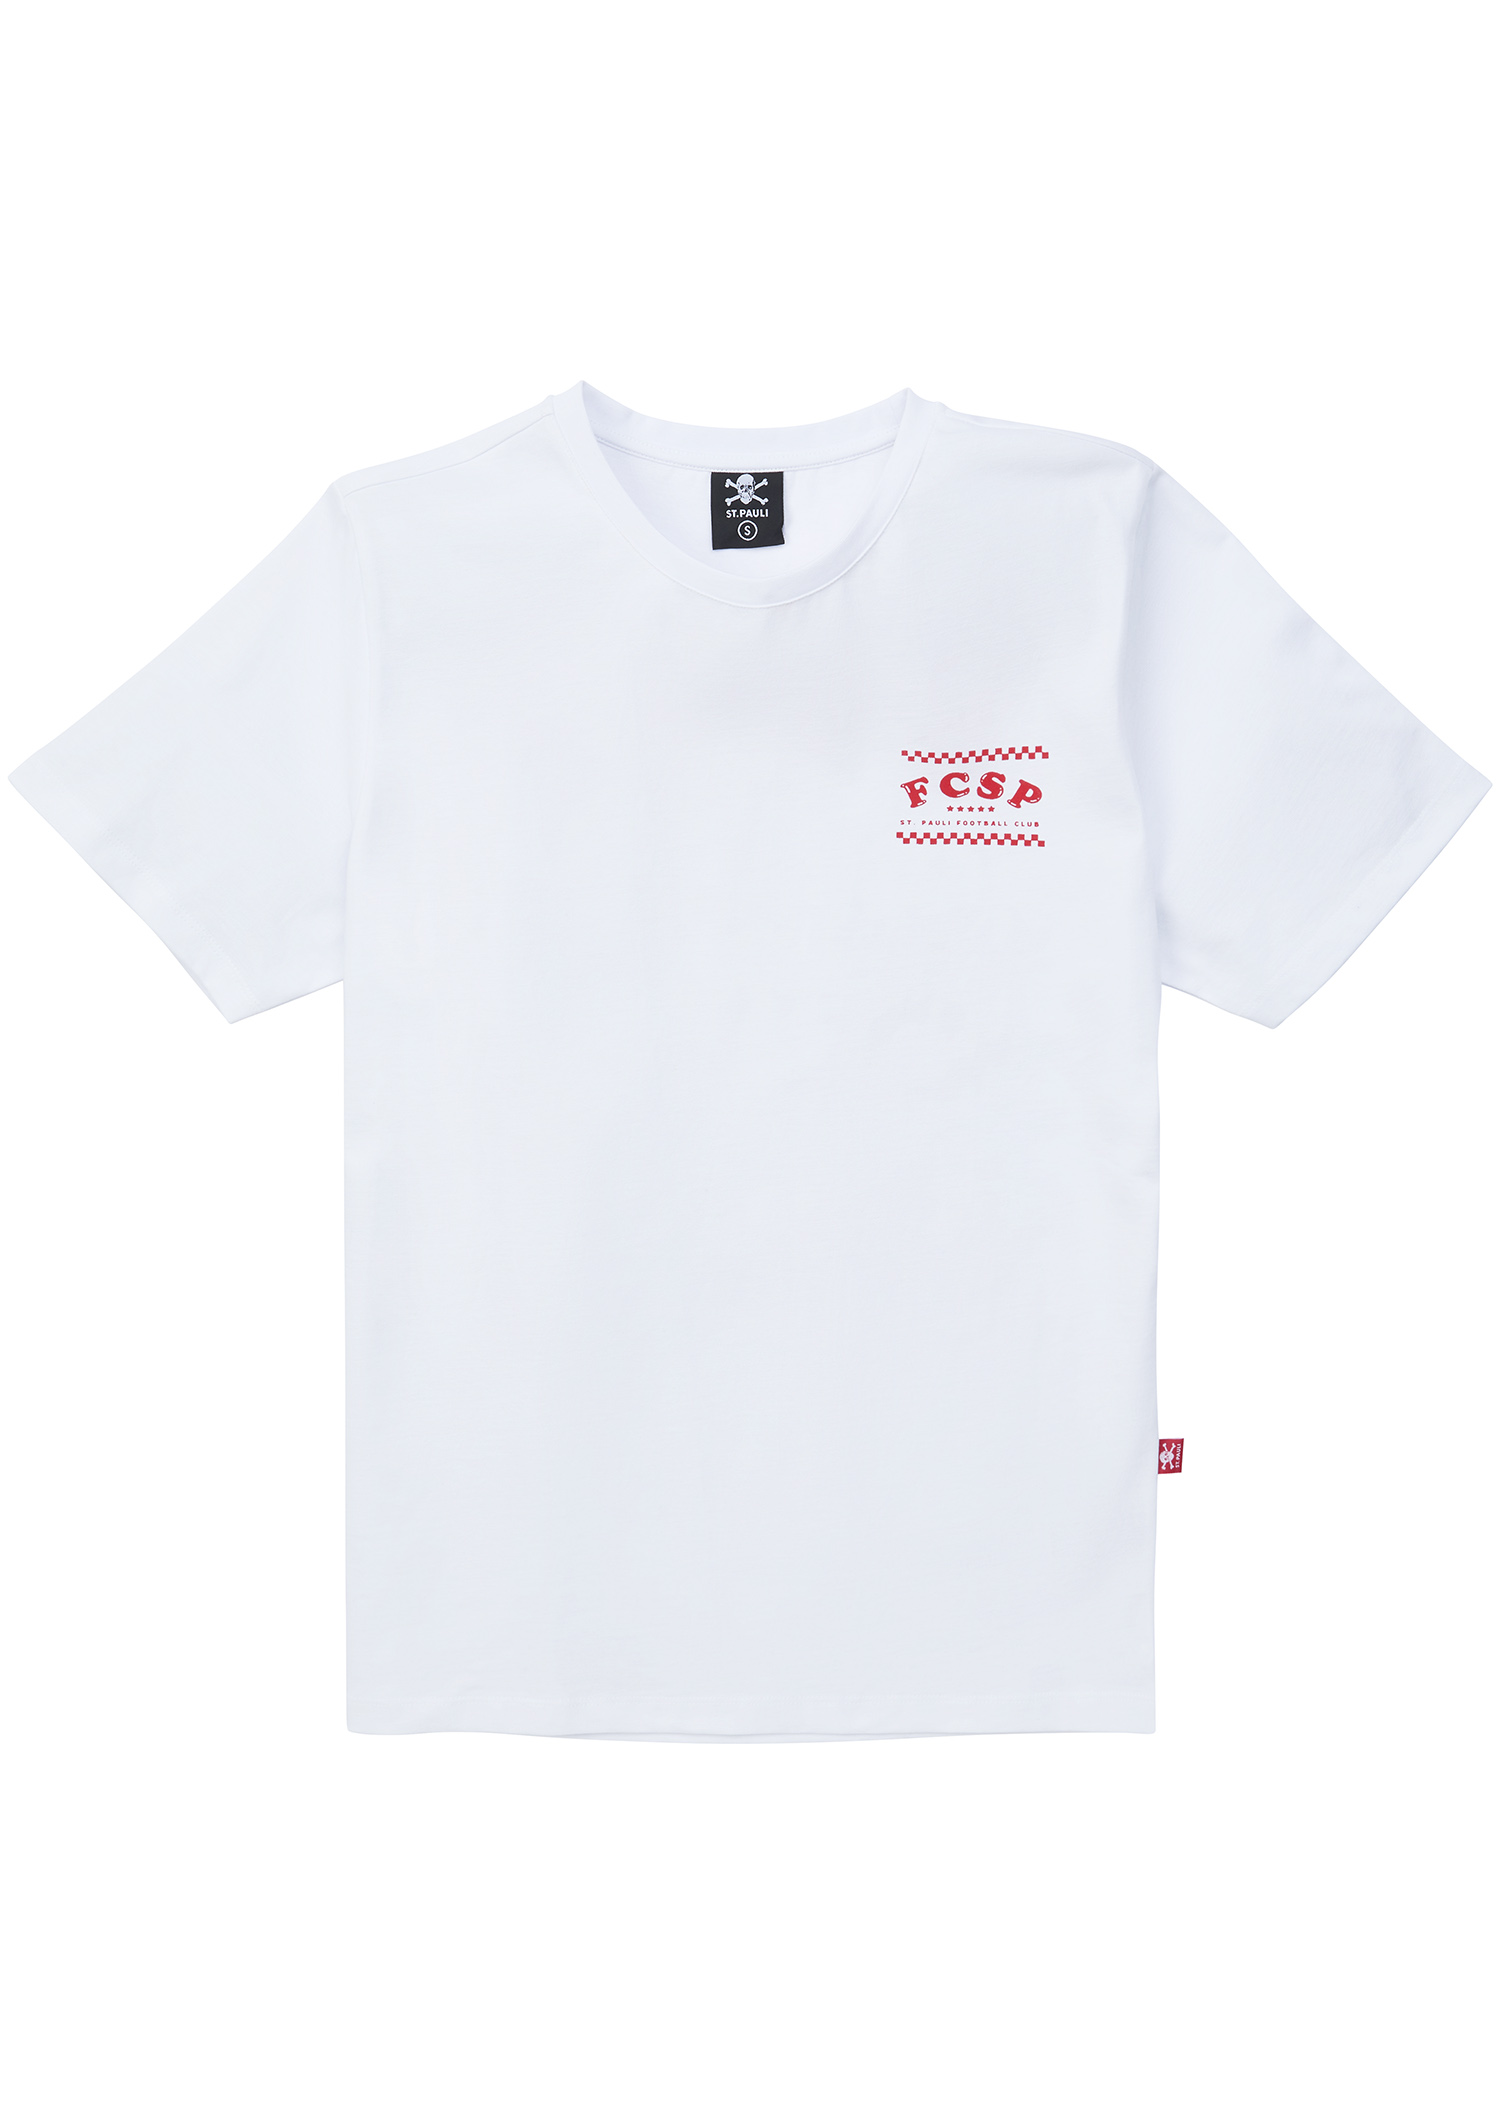 T-Shirt "Pizza Club" Sankt Pauli